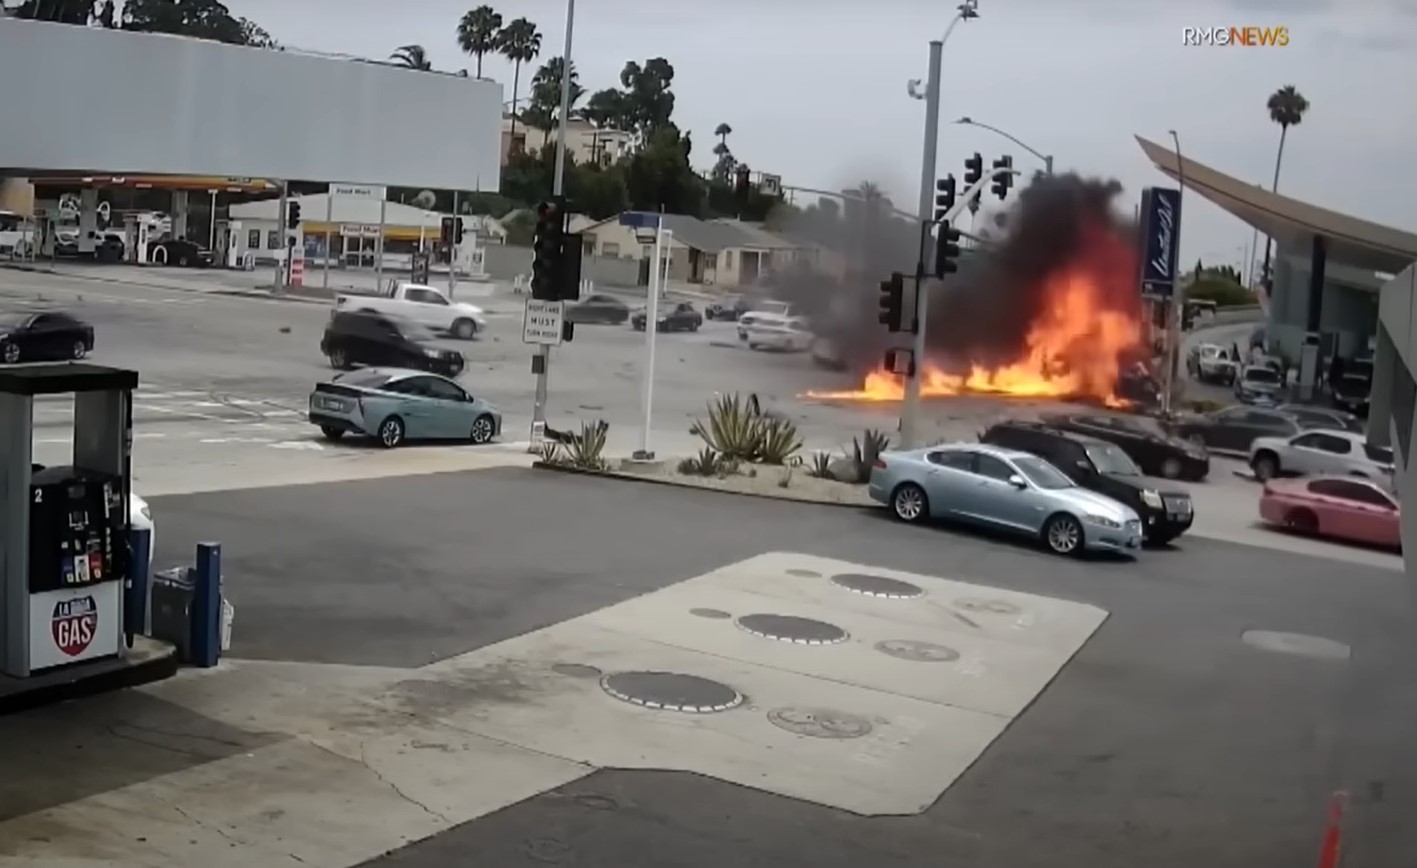 Quedó registrado en vídeo fatal accidente en carretera de Los Angeles donde fallecieron seis personas. Foto: CBS Los Angeles